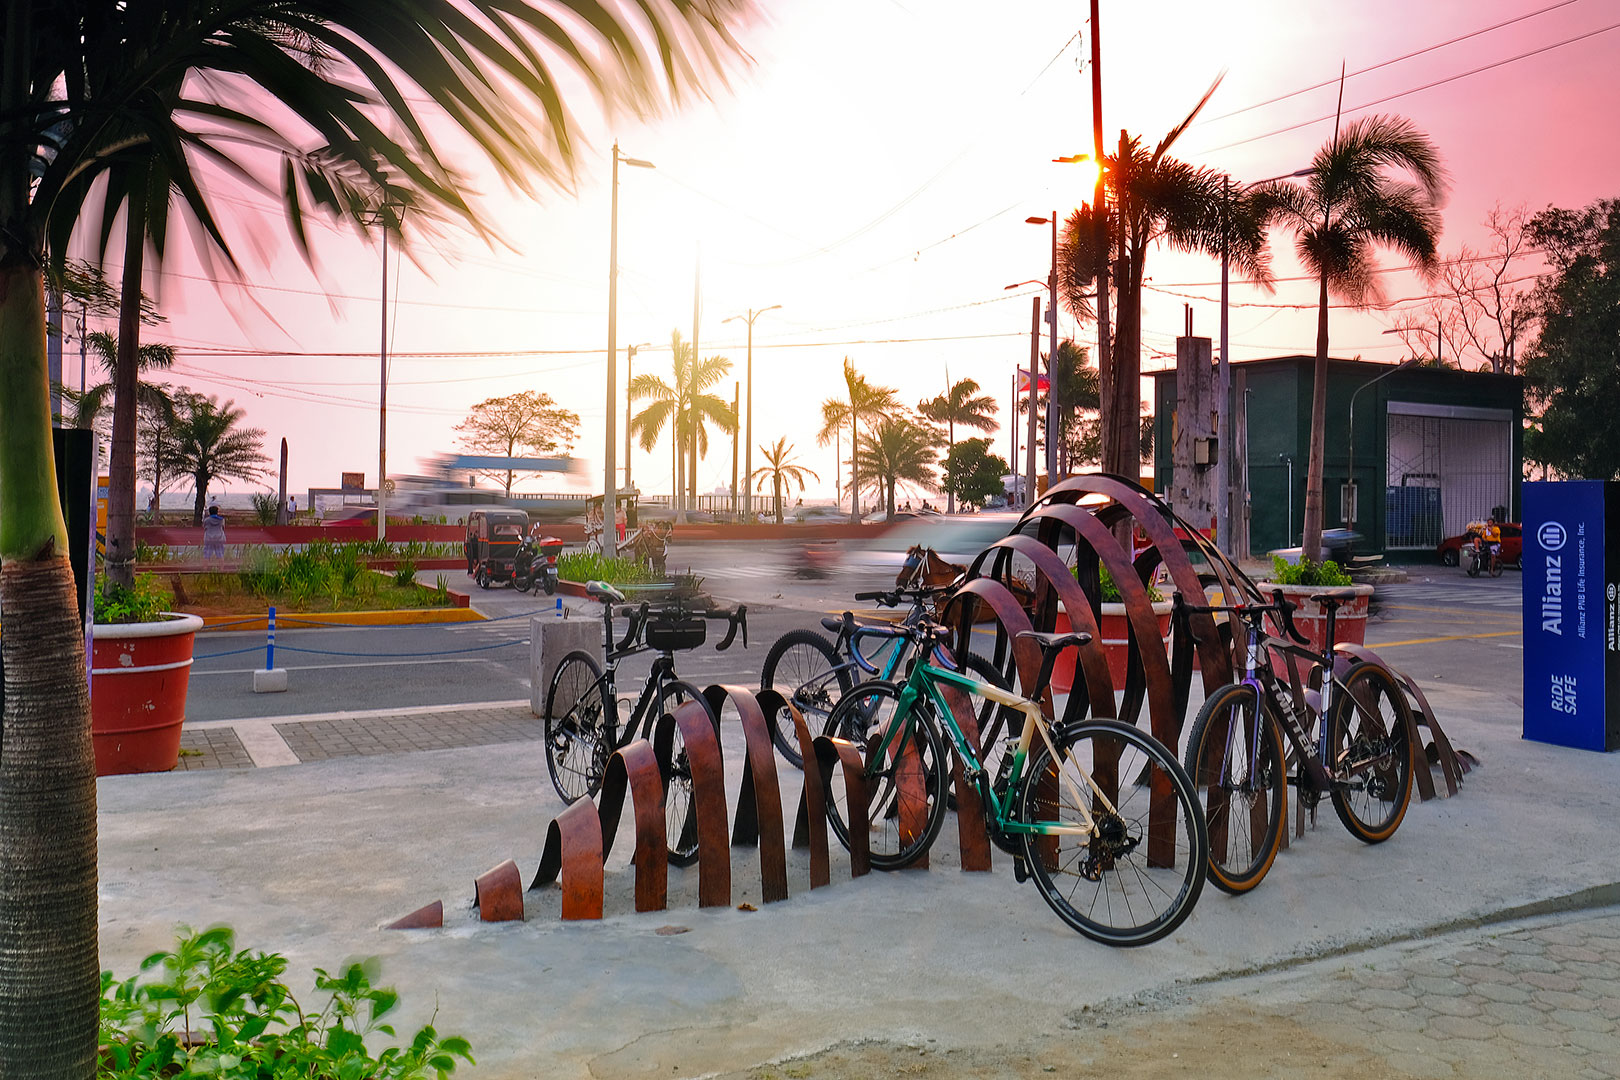 Manila bike racks - Alon bike rack